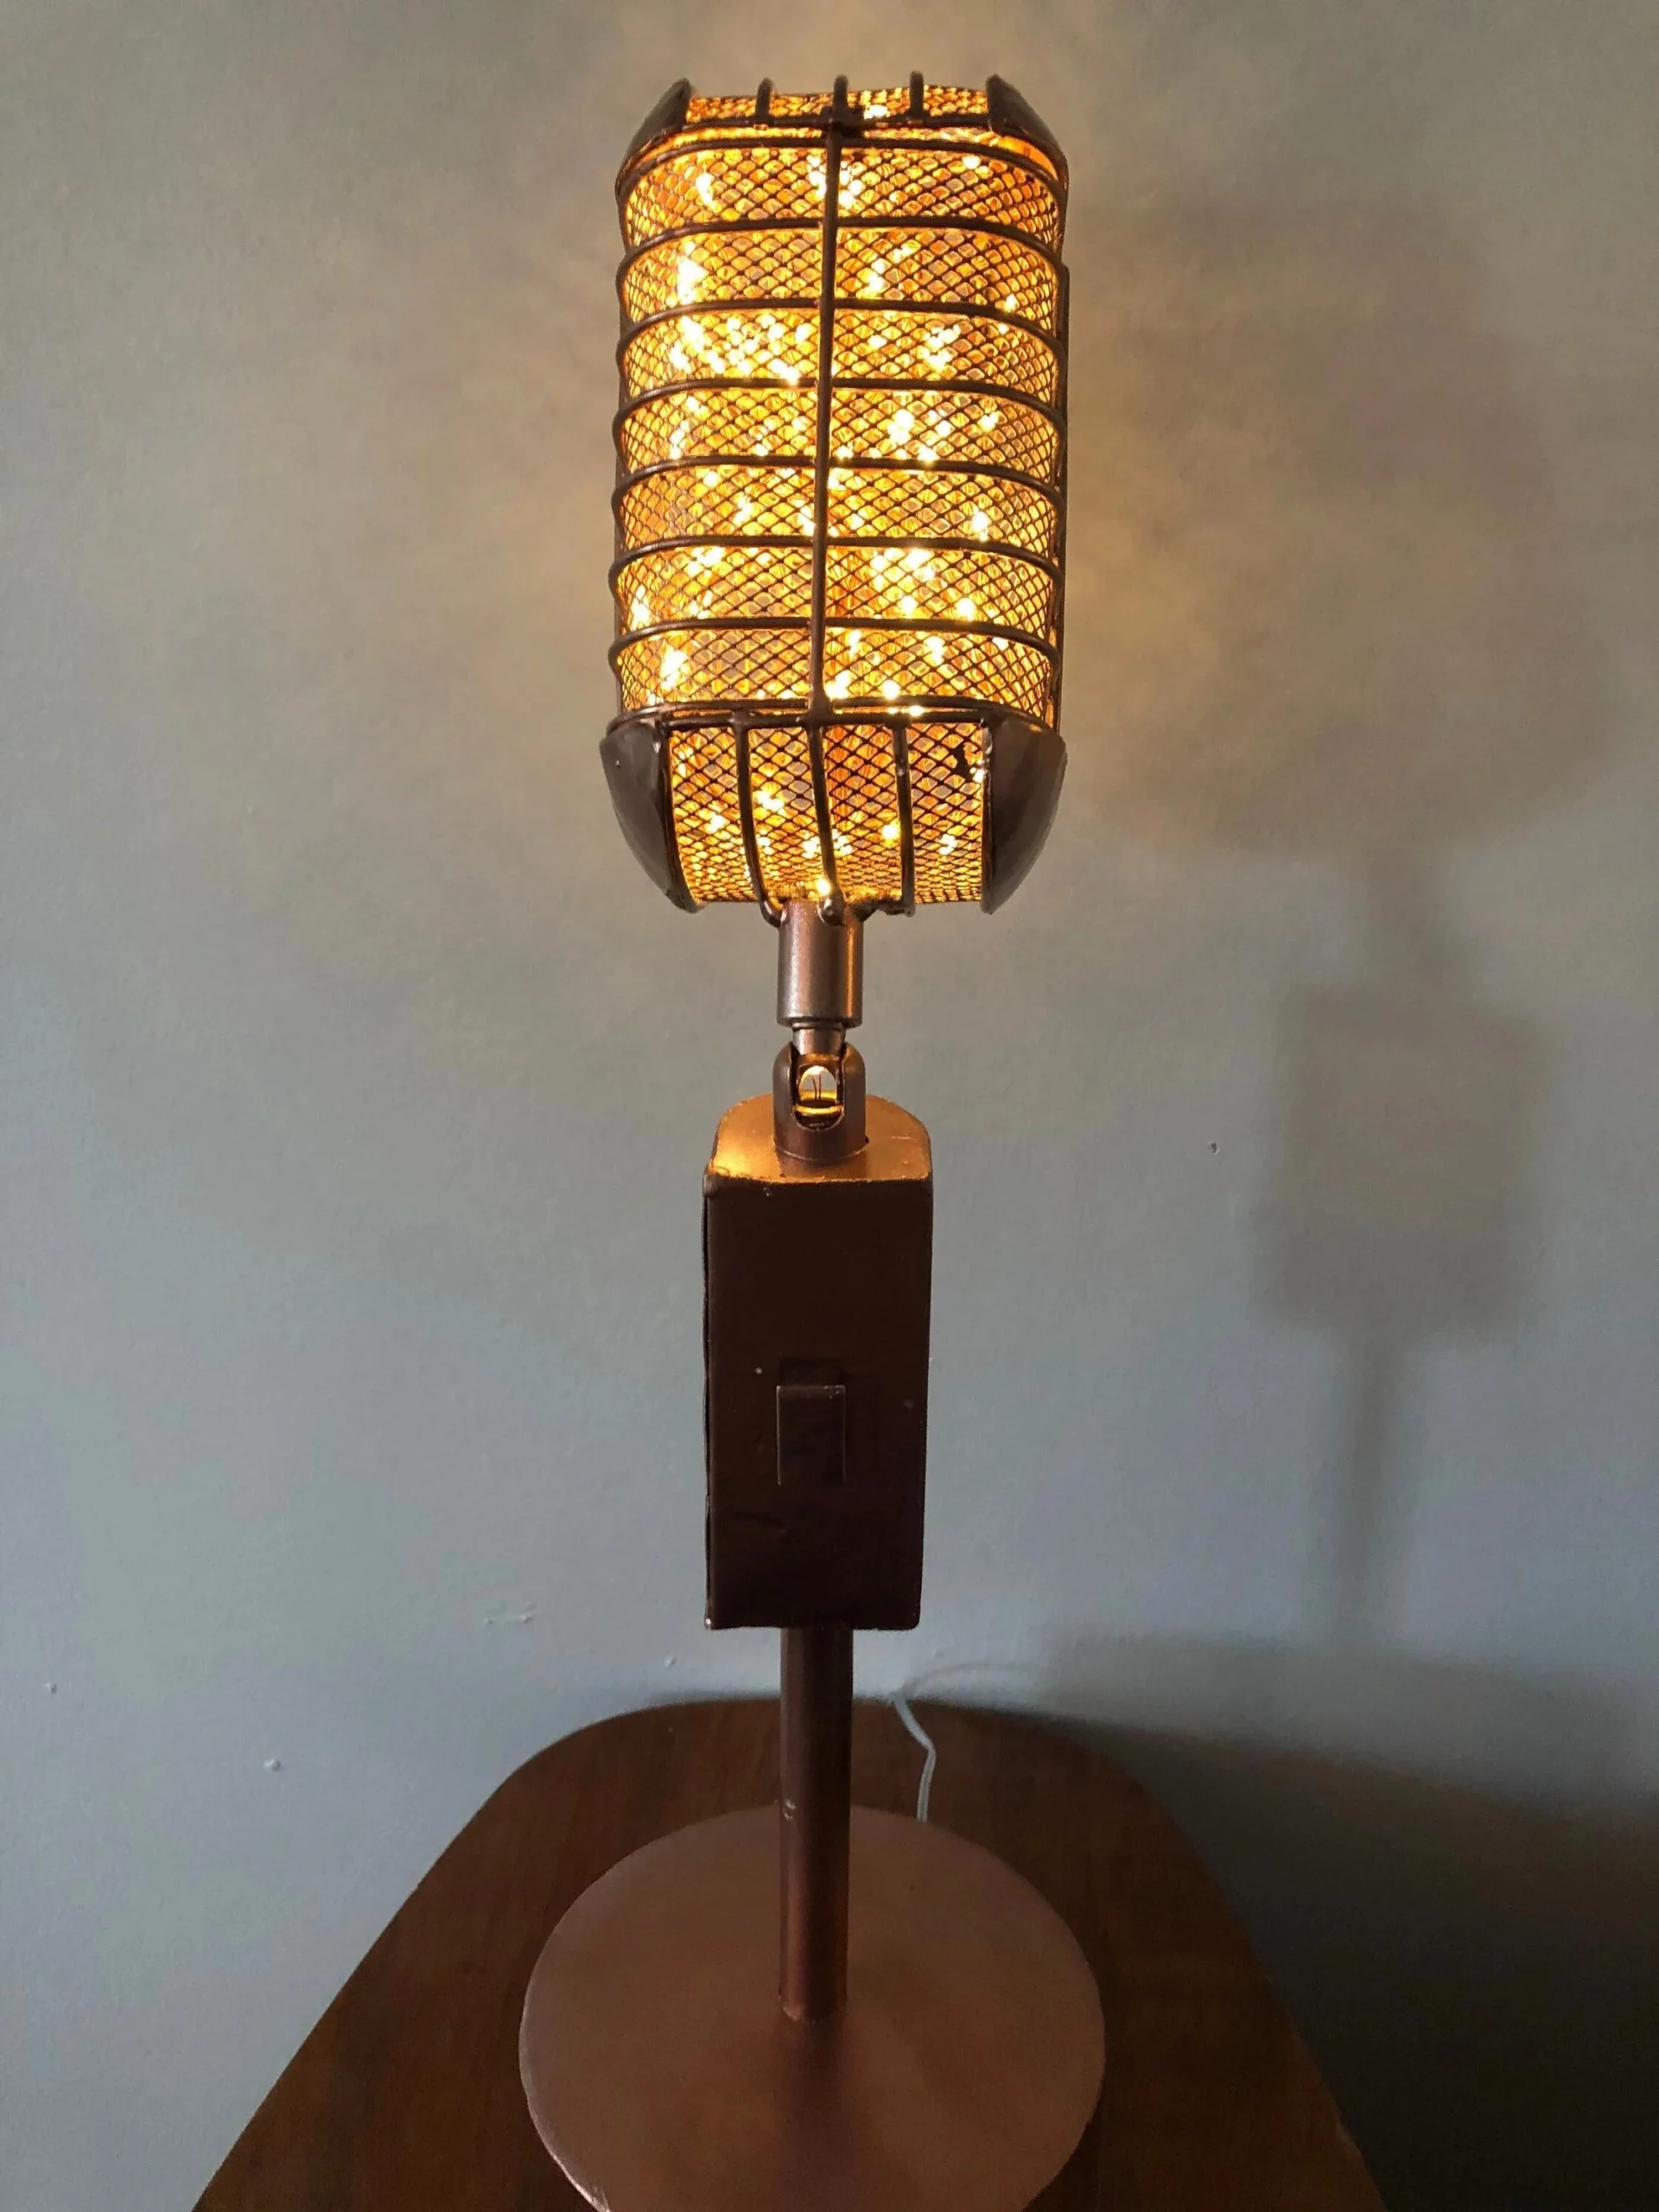 room lamp traduccion - Cómo se dice Cuarto de luces en inglés